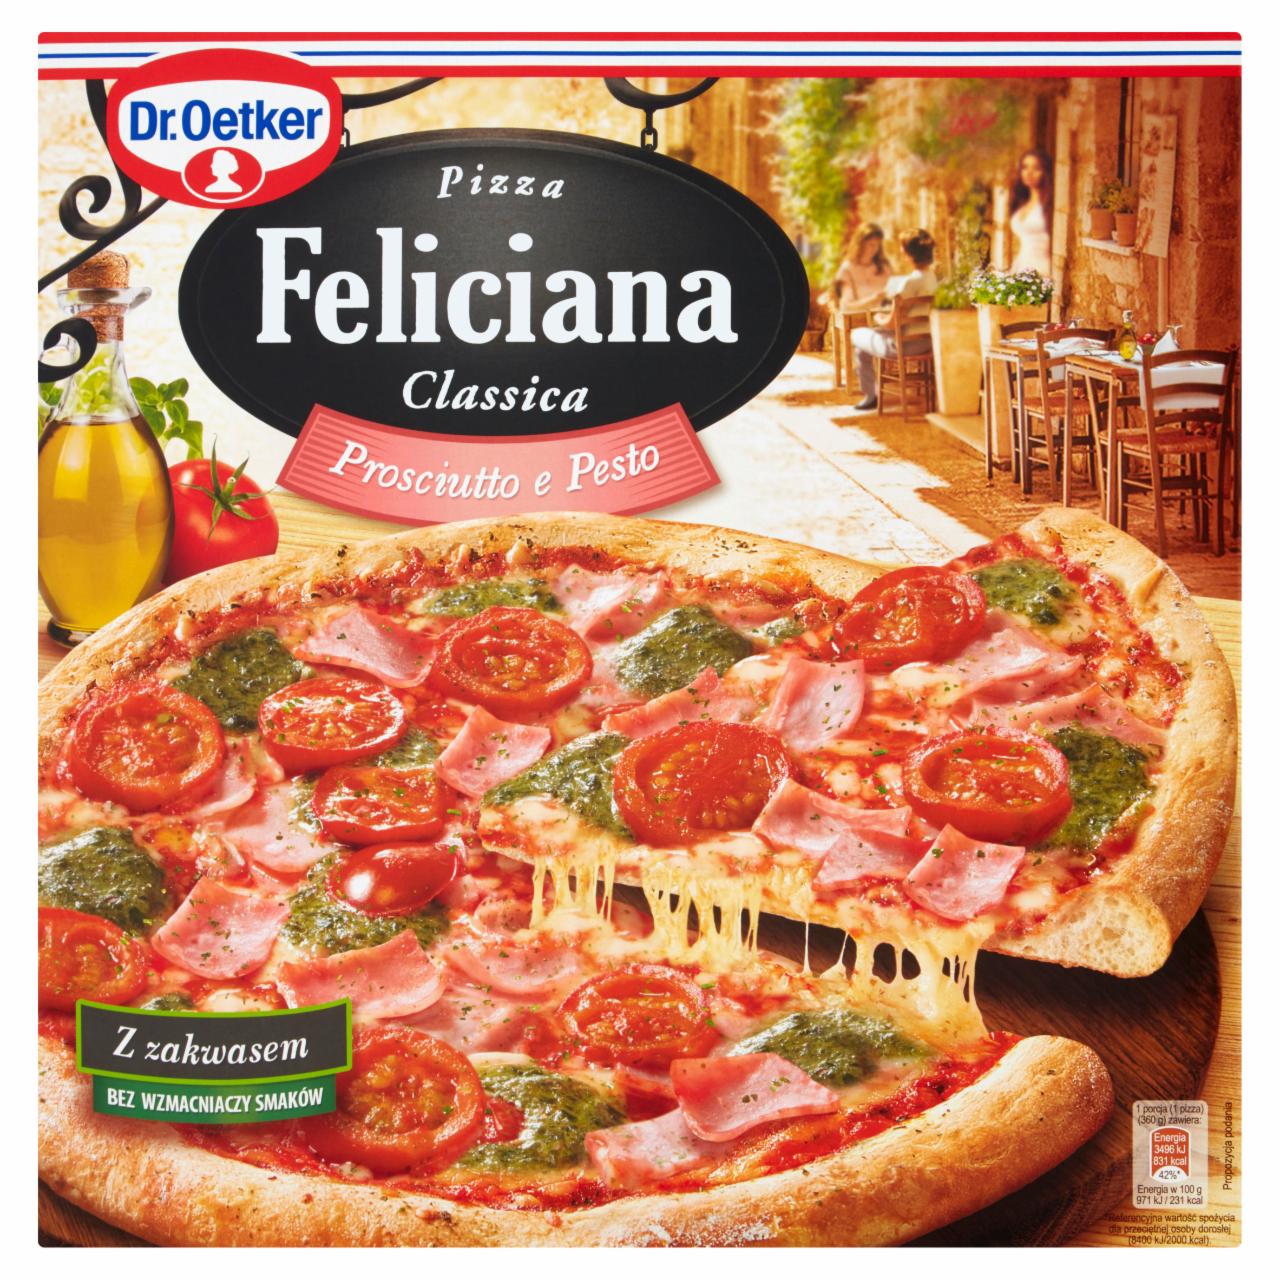 Zdjęcia - Dr. Oetker Feliciana Classica Pizza Prosciutto e Pesto 360 g